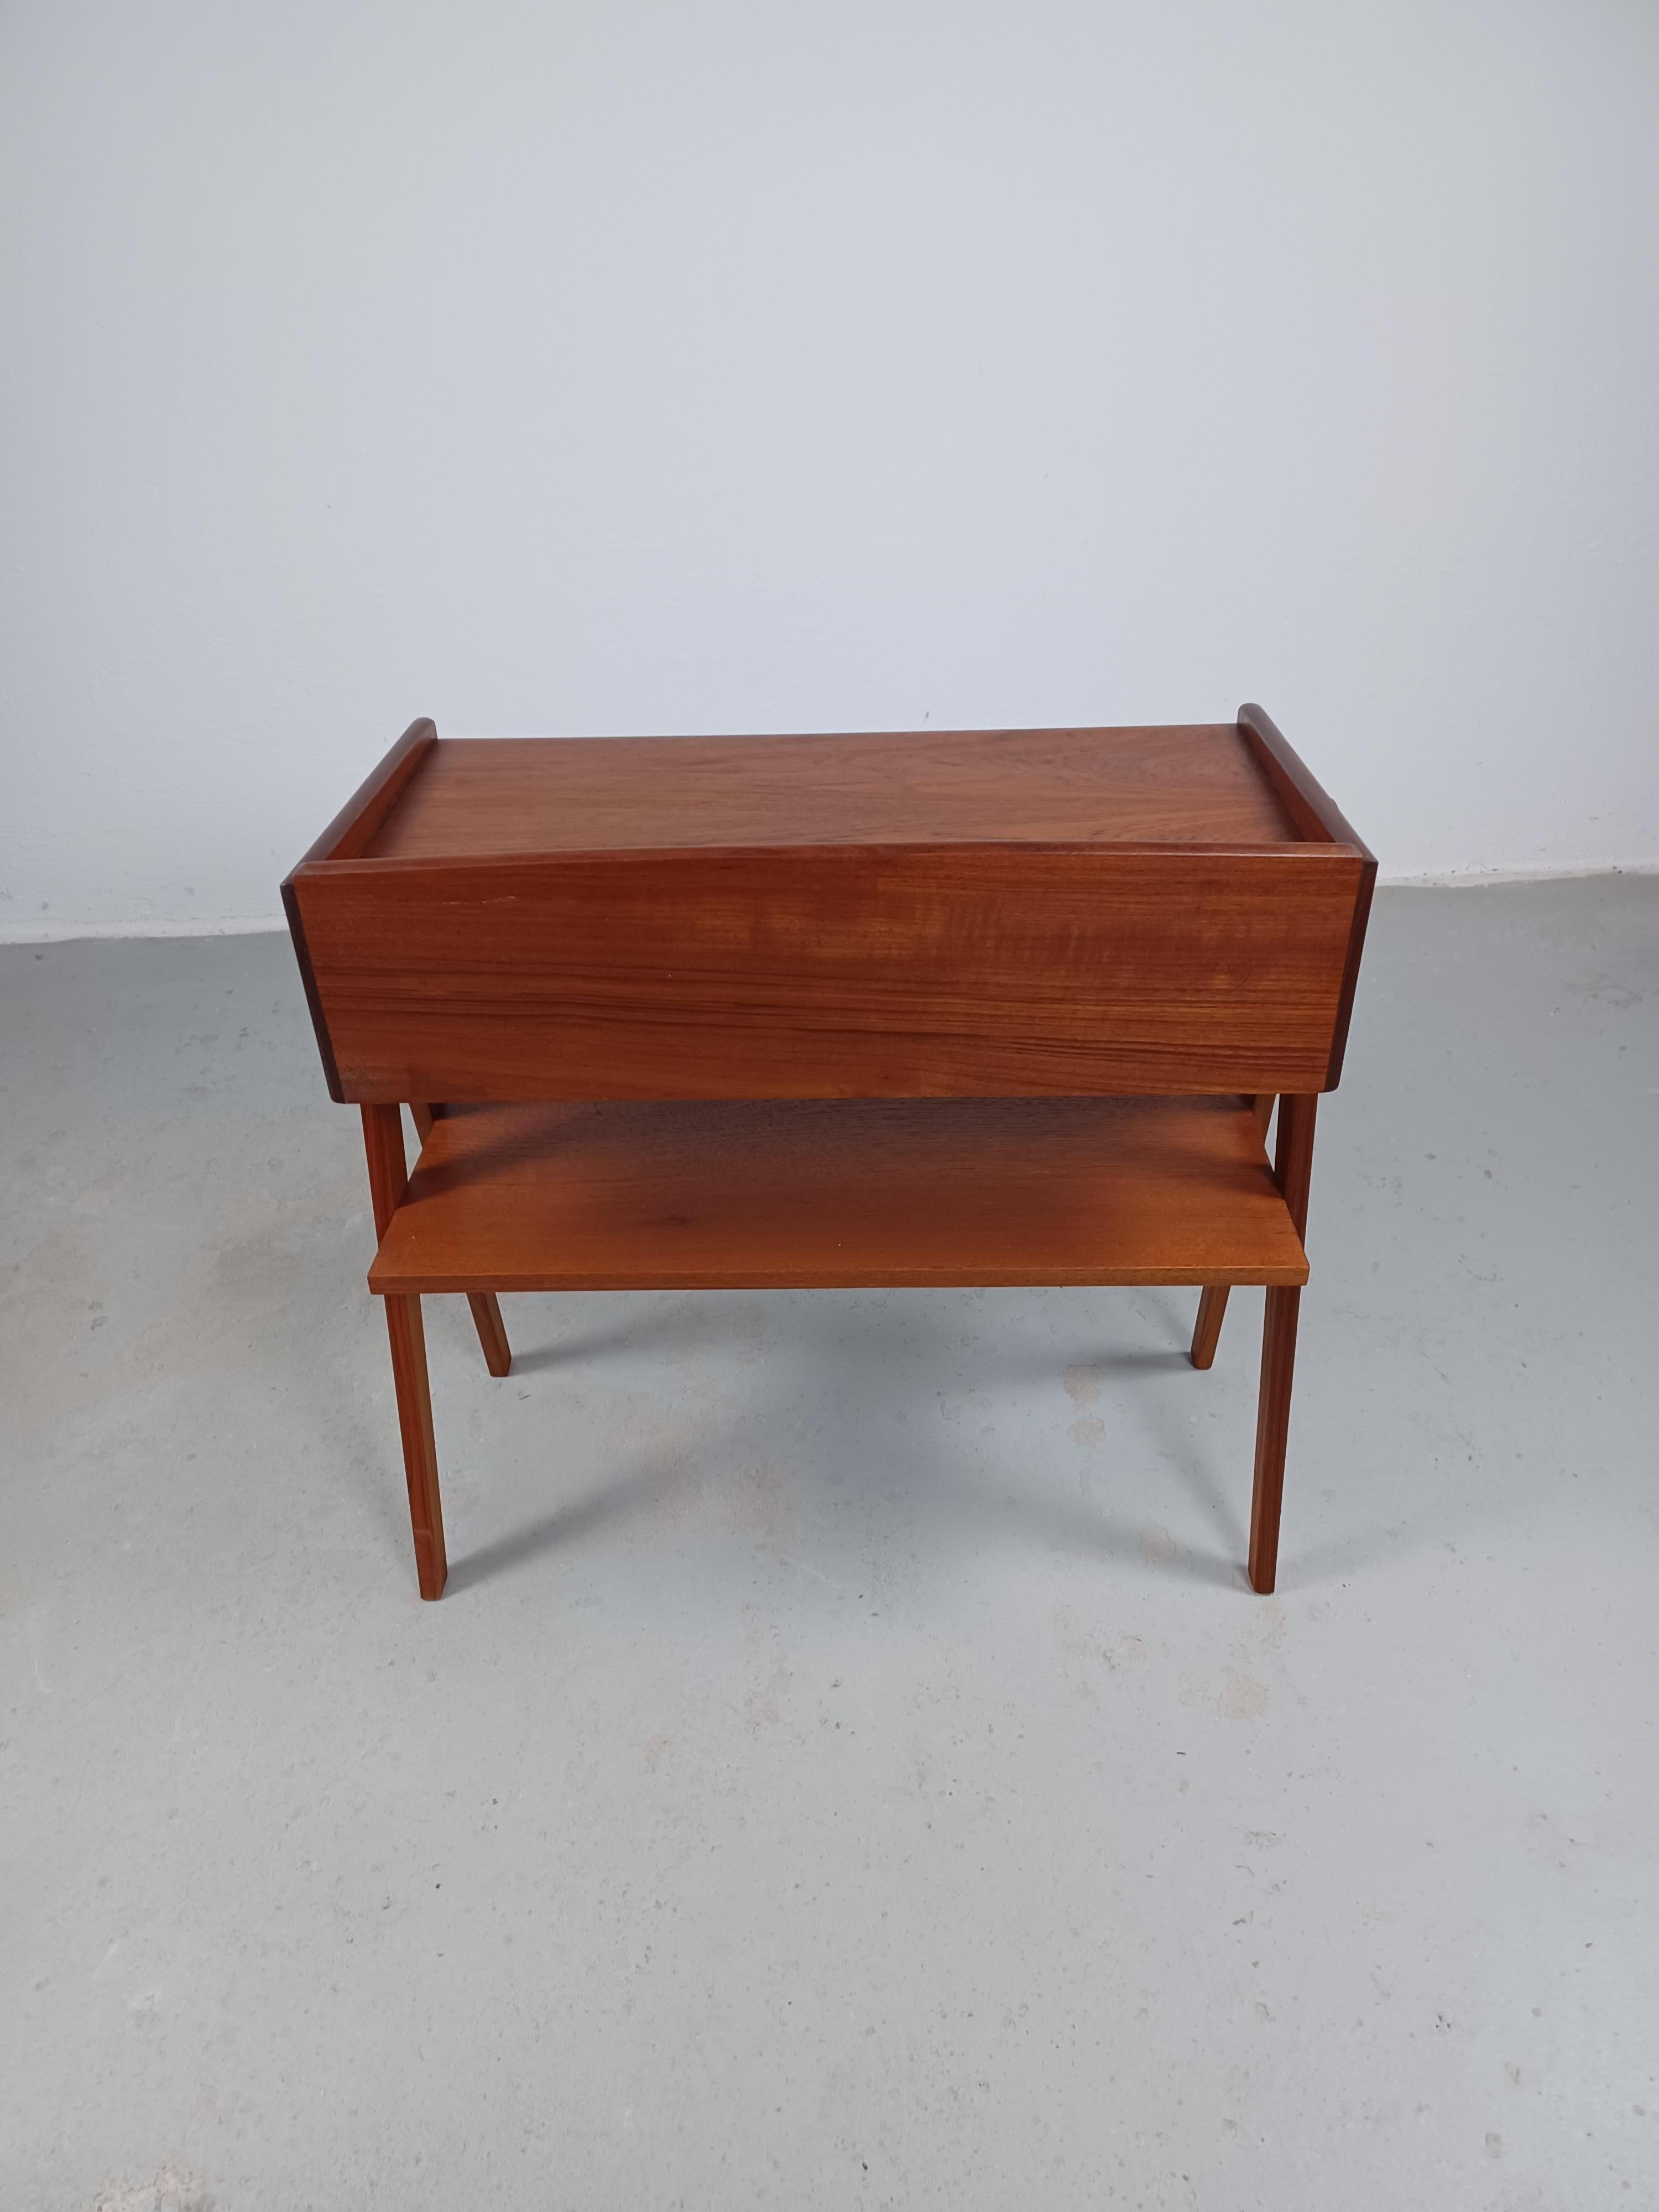 1950s Fully Restored Danish Søren Rasmussen Entry Table in Teak For Sale 3